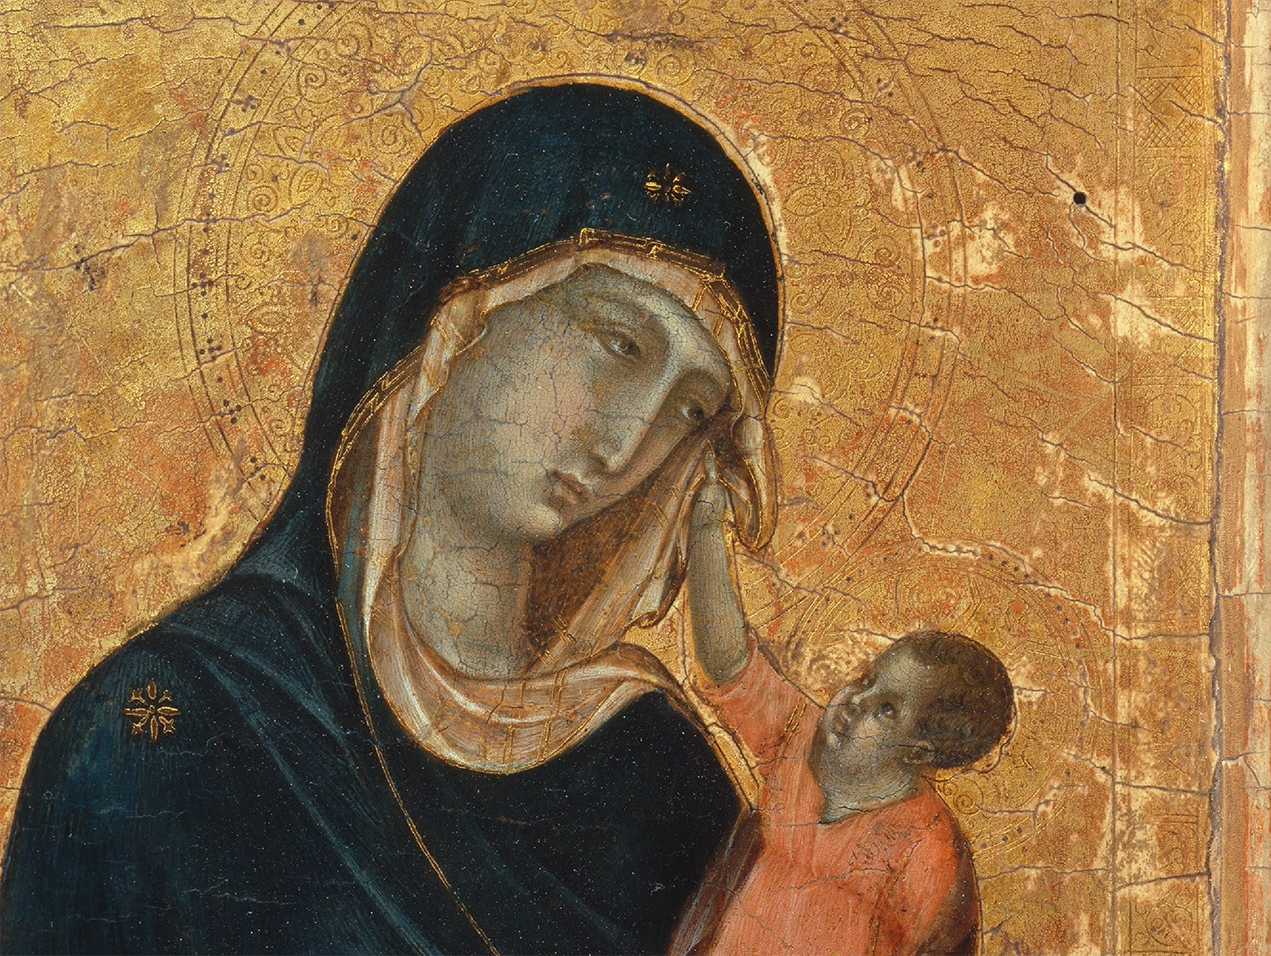 中世纪圣母像作品图片